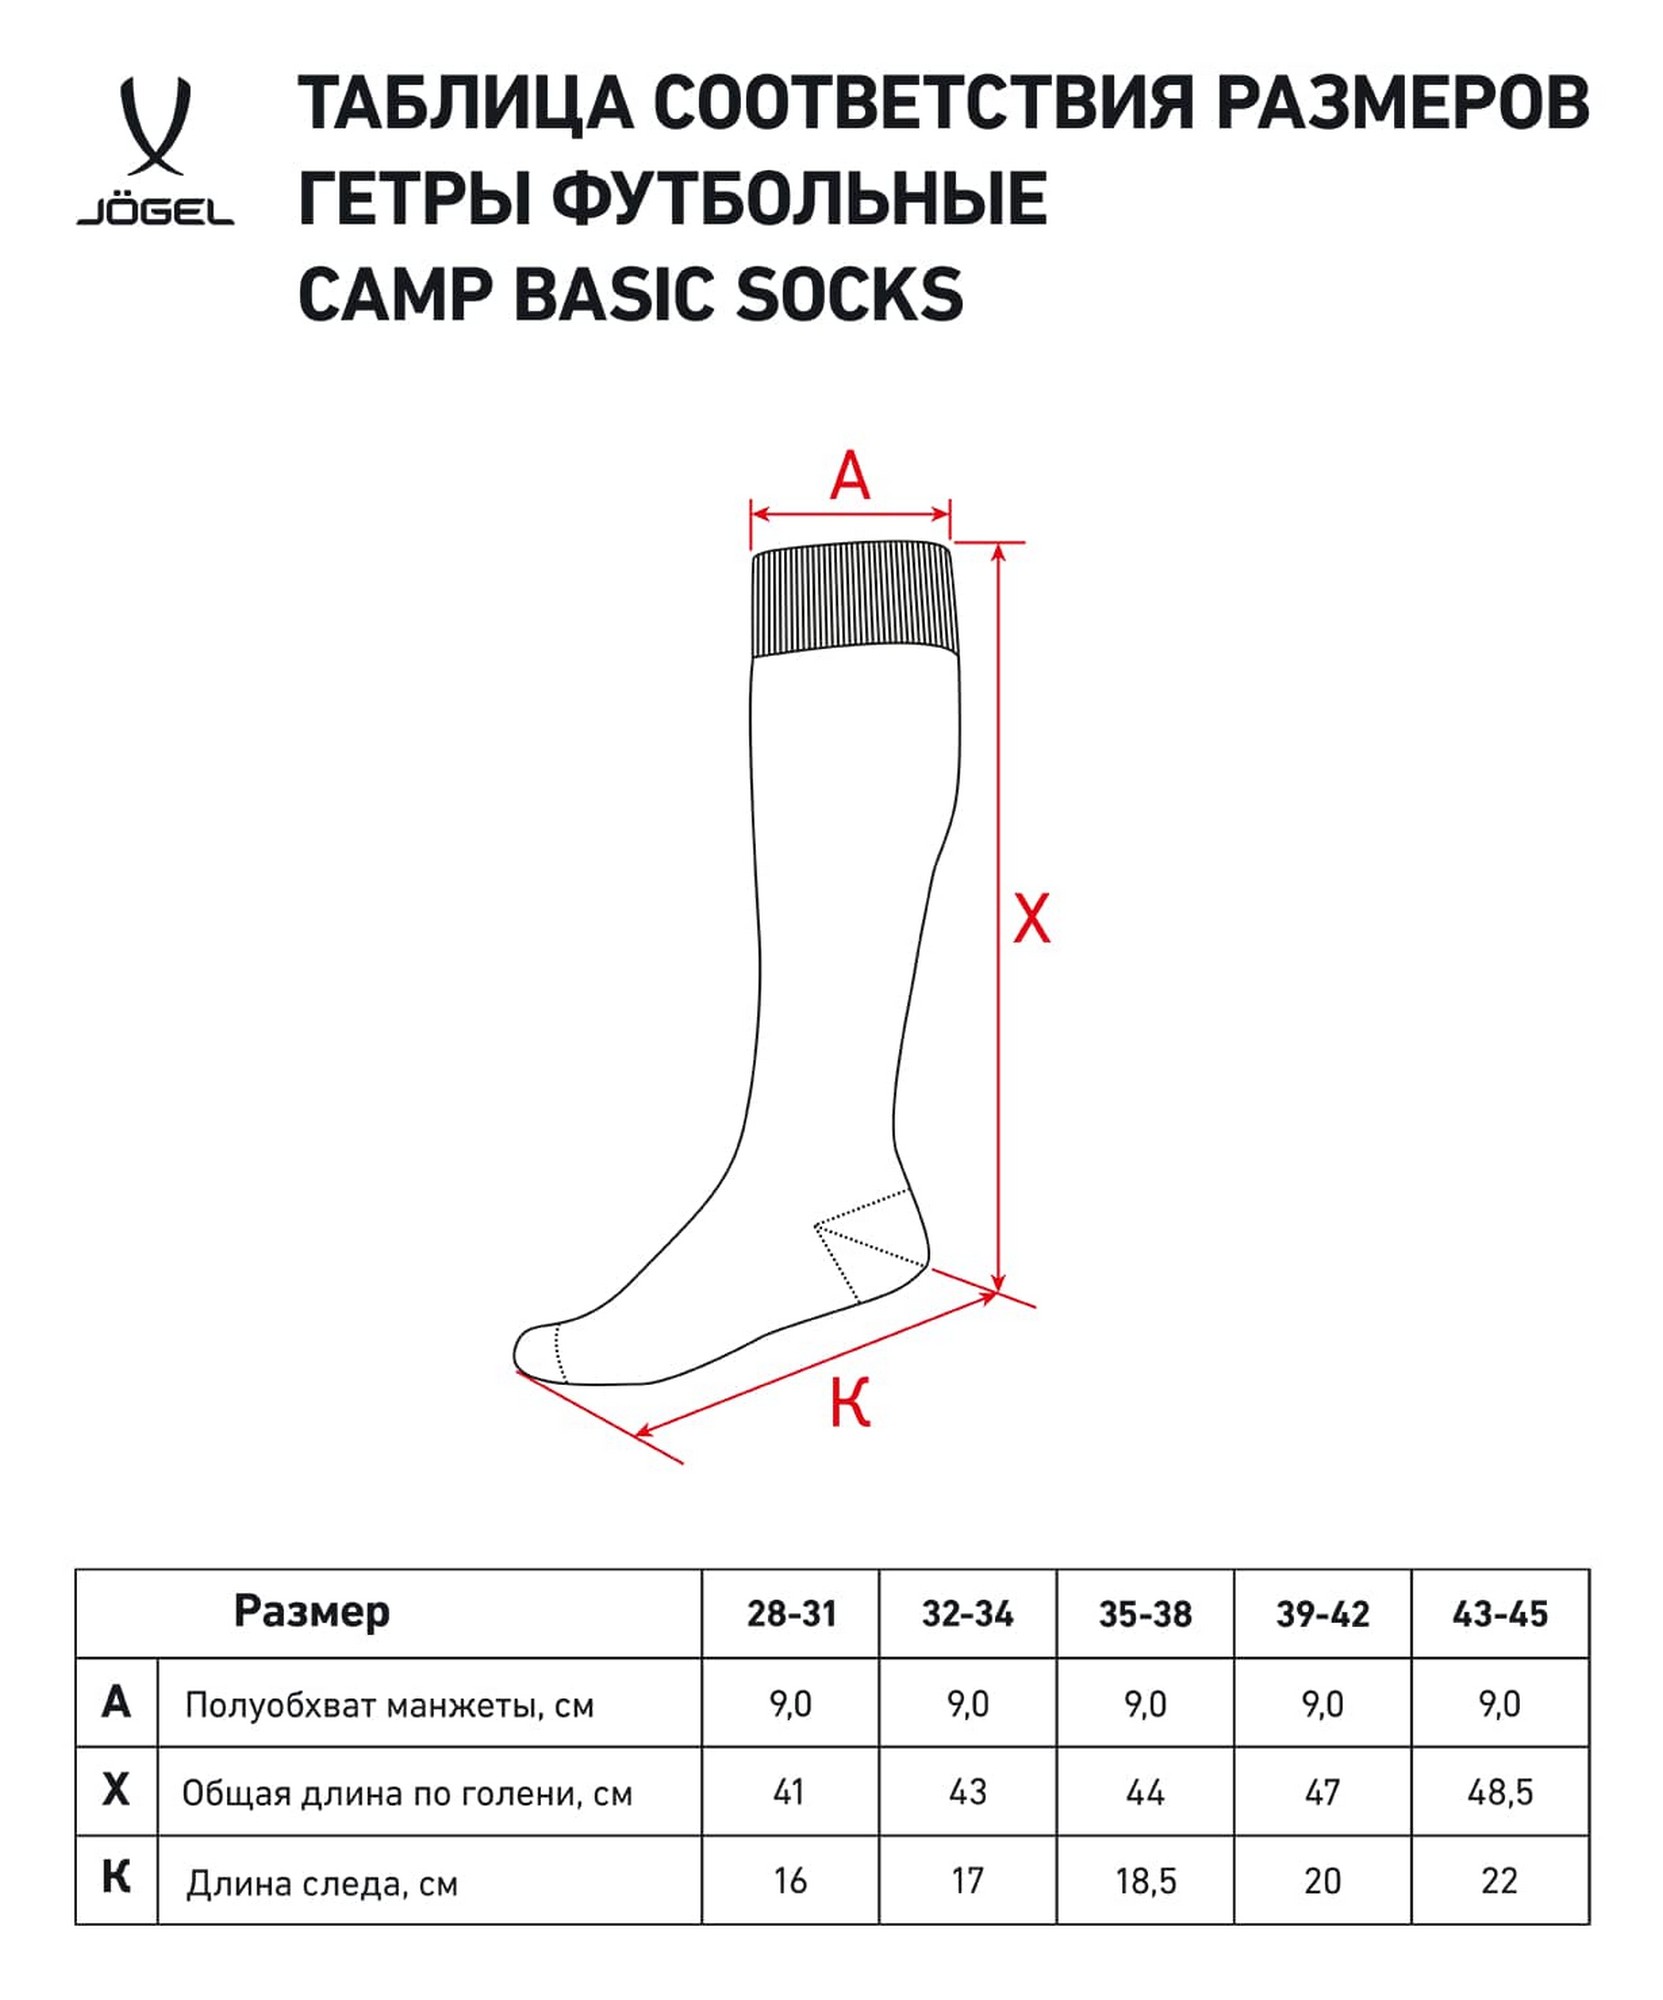 Гетры футбольные Jogel Camp Basic Socks бирюзовый\серый 1663_2000